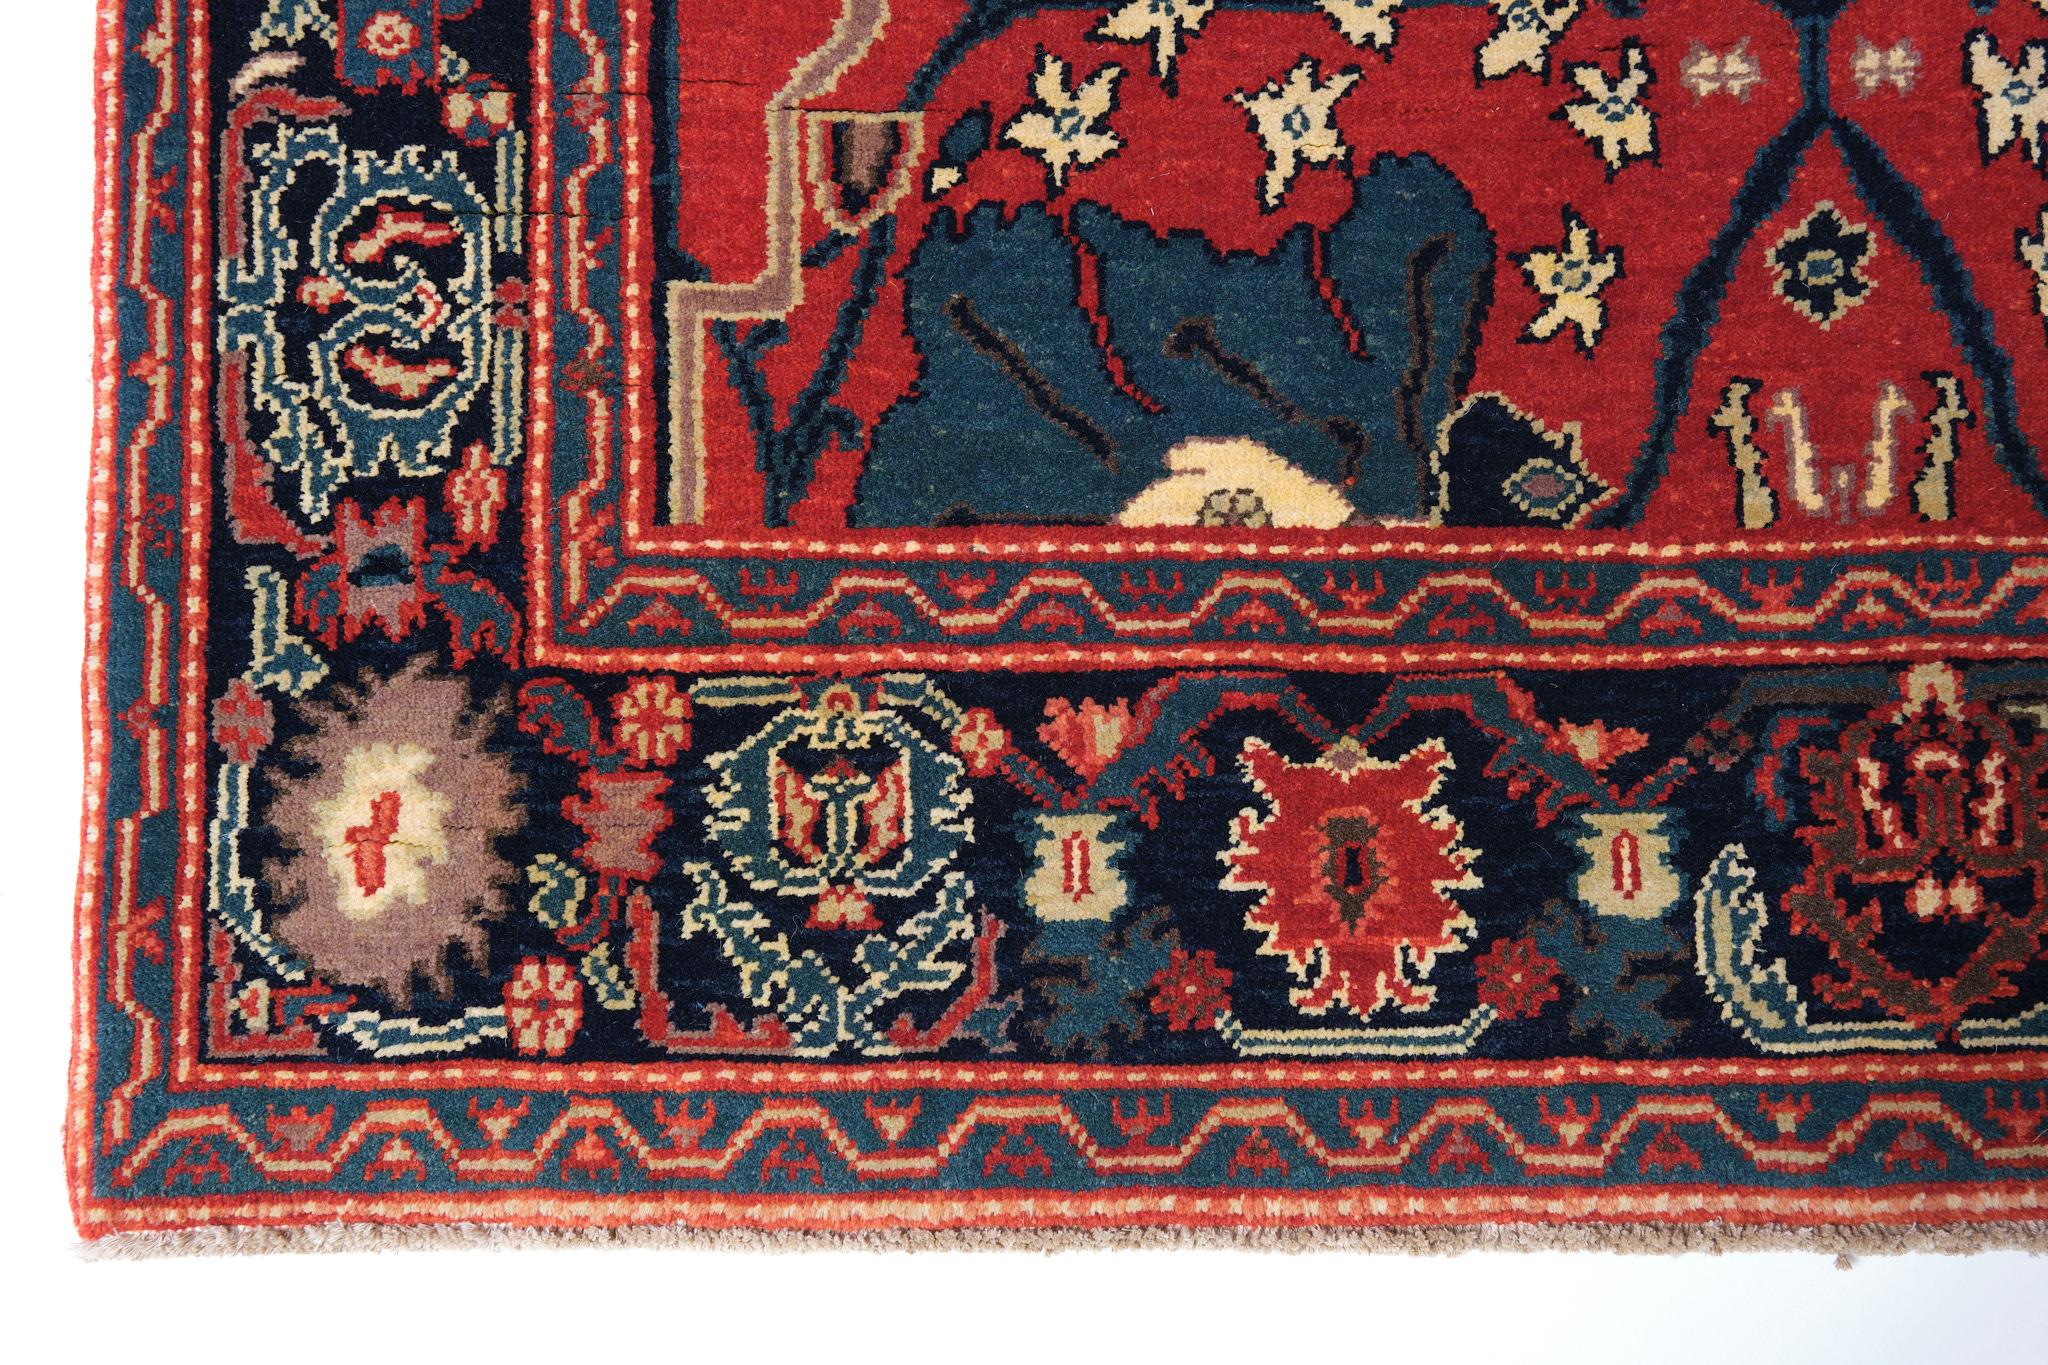 Die Quelle des Teppichs stammt aus dem Buch Islamic Carpets, Joseph V. McMullan, Near Eastern Art Research Center Inc. 1965, New York, Nr. 22. Dies ist ein System von Teppichen mit Arabeskenmuster aus dem 19. Jahrhundert aus der Region Gerous